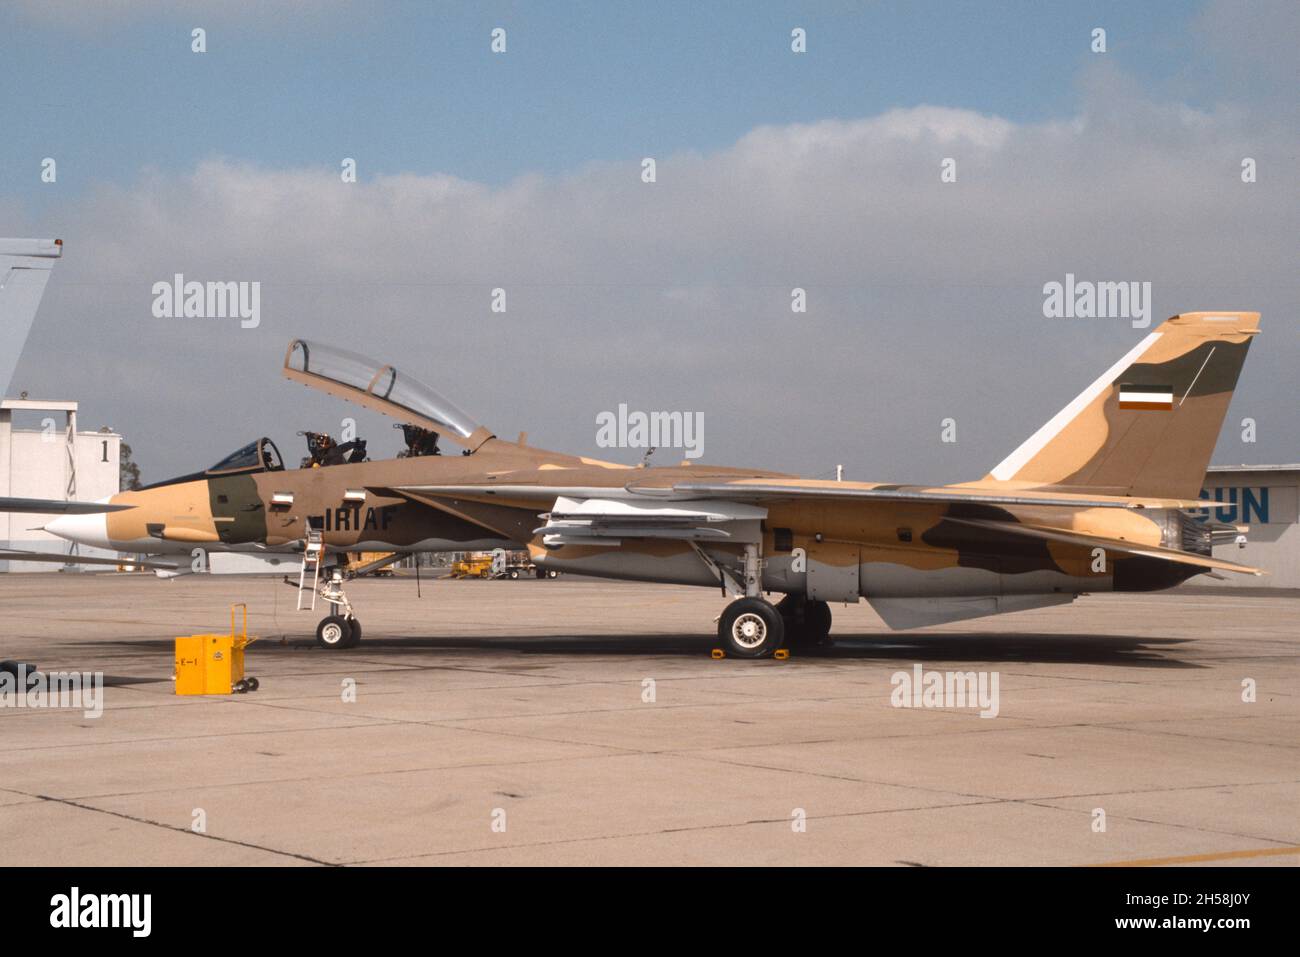 F-14 mit iranischen Markierungen auf der statischen Linie der Top Gun bei NAS Miramar, San Diego, Kalifornien. Dies war die F-14 von 80th, die in den Iran geschickt werden sollte. Stockfoto